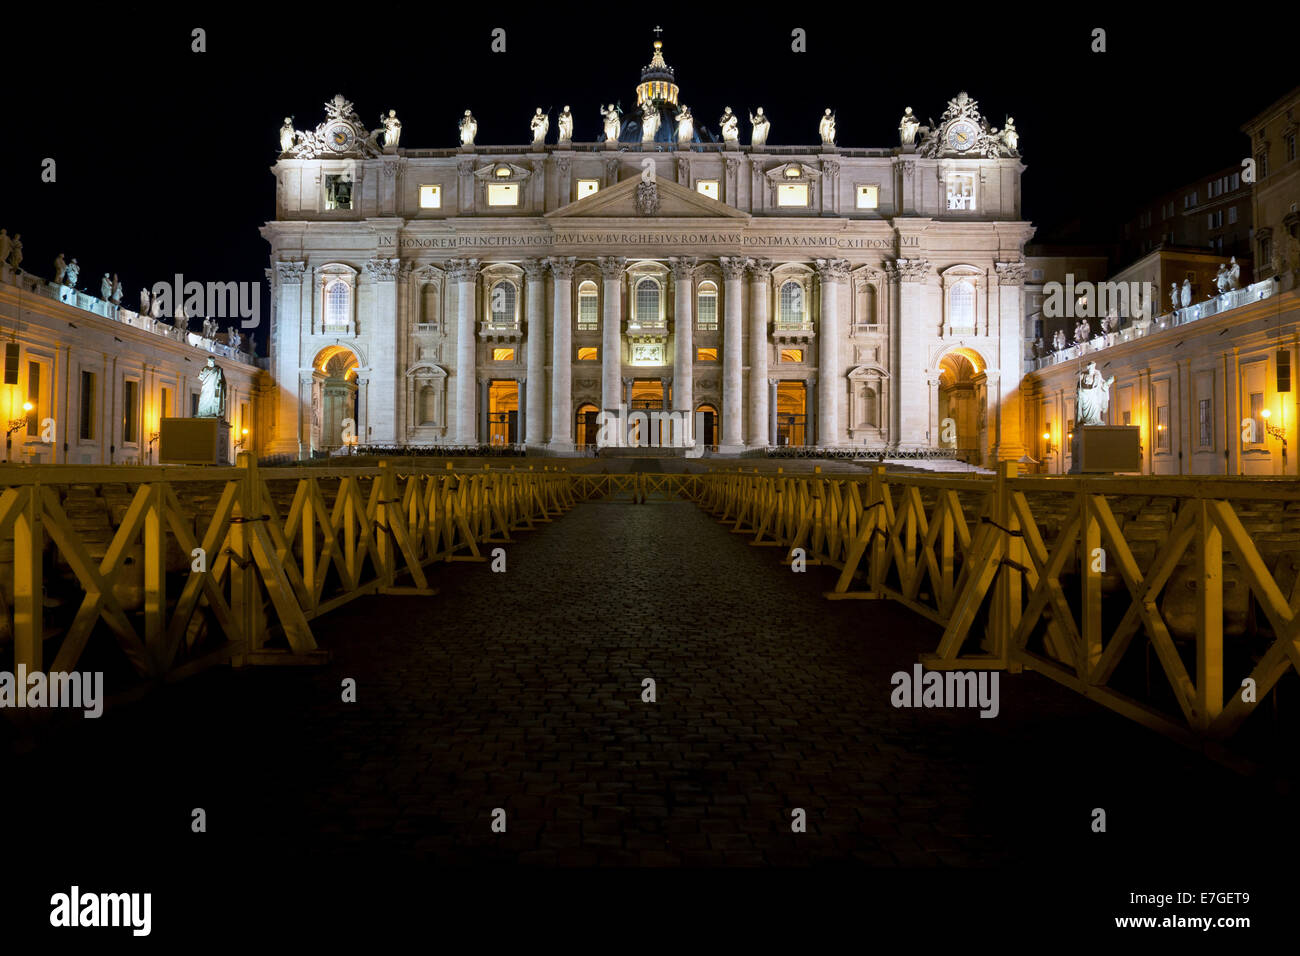 Città del Vaticano: vista frontale della Basilica di San Pietro durante la notte. Foto dal 5 settembre 2014. Foto Stock